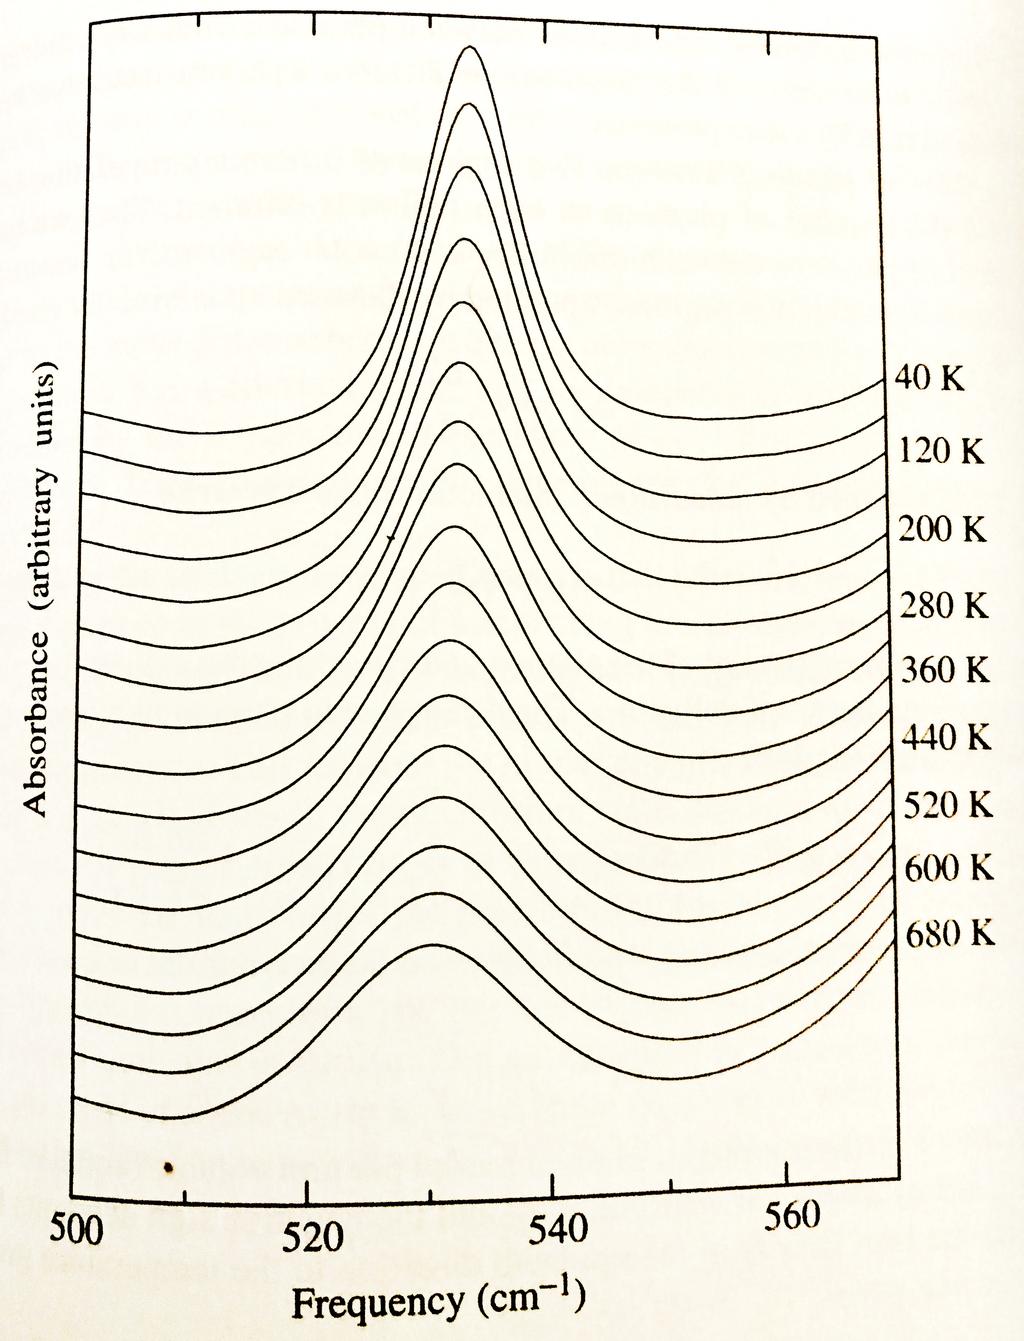 Espectro de espectroscopía infrarroja donde puede observarse el ensanchamiento del pico de absorción con